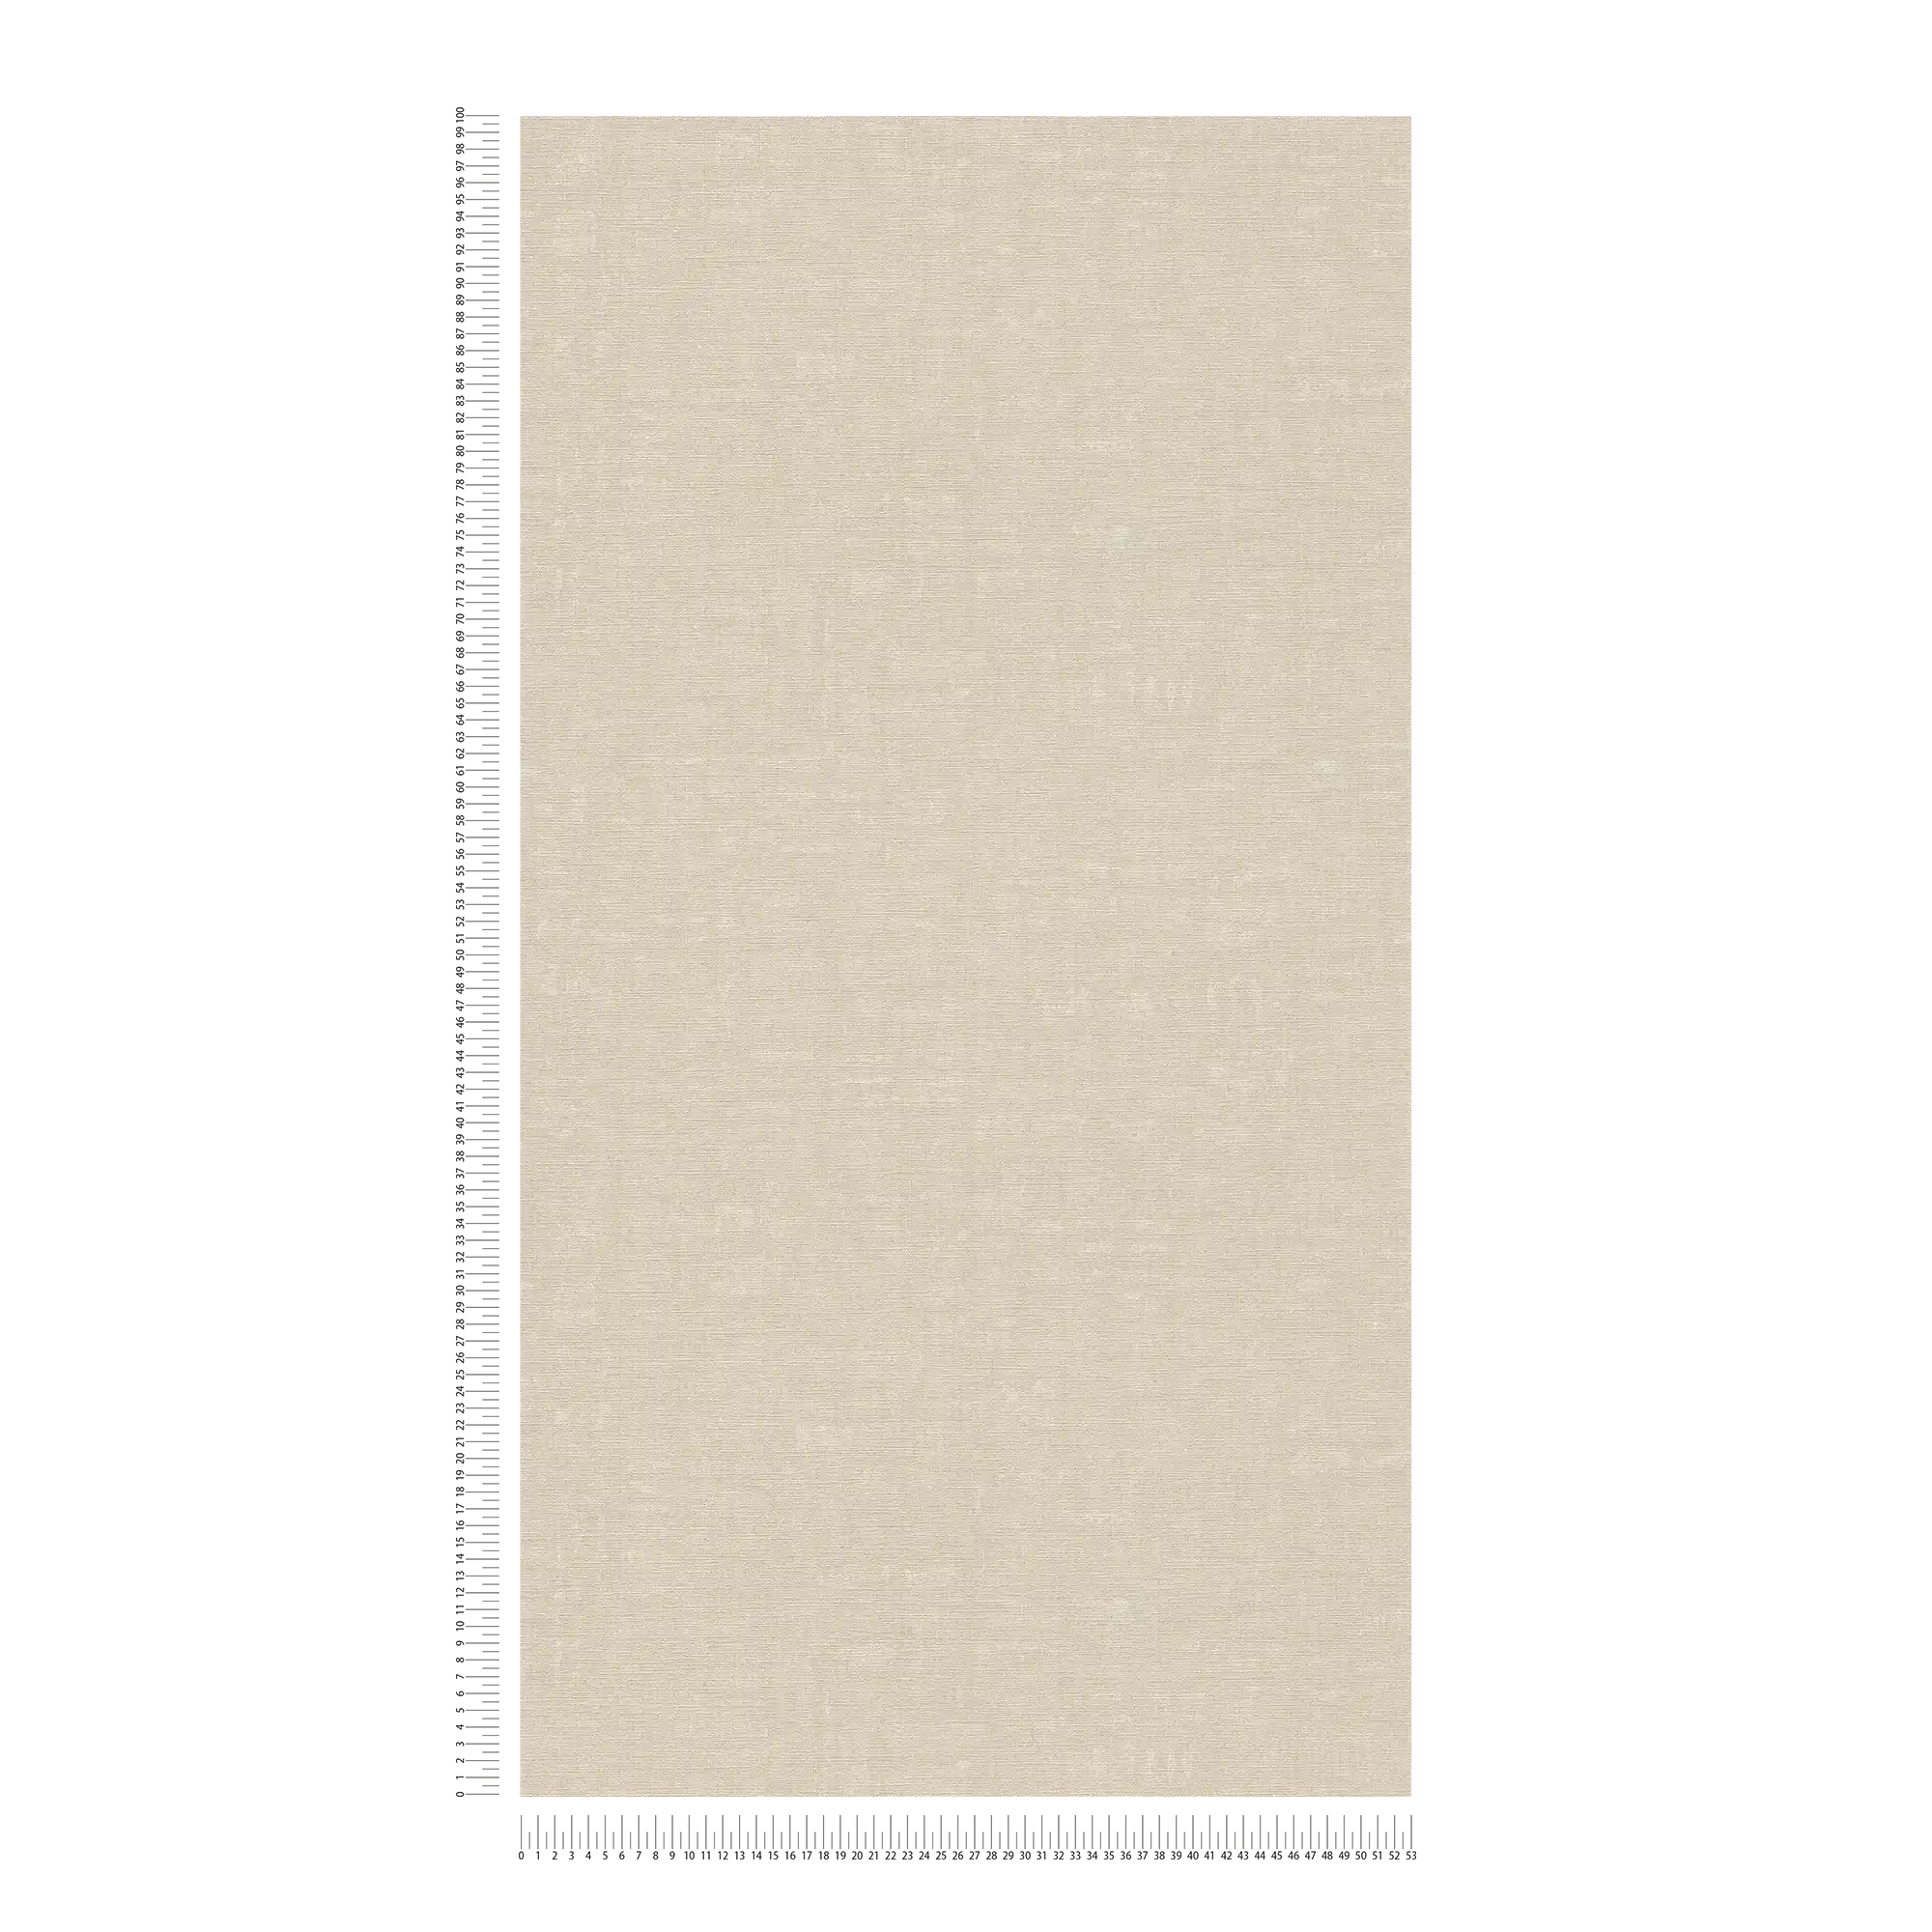             Papier peint intissé uni avec effet structuré - gris, beige
        